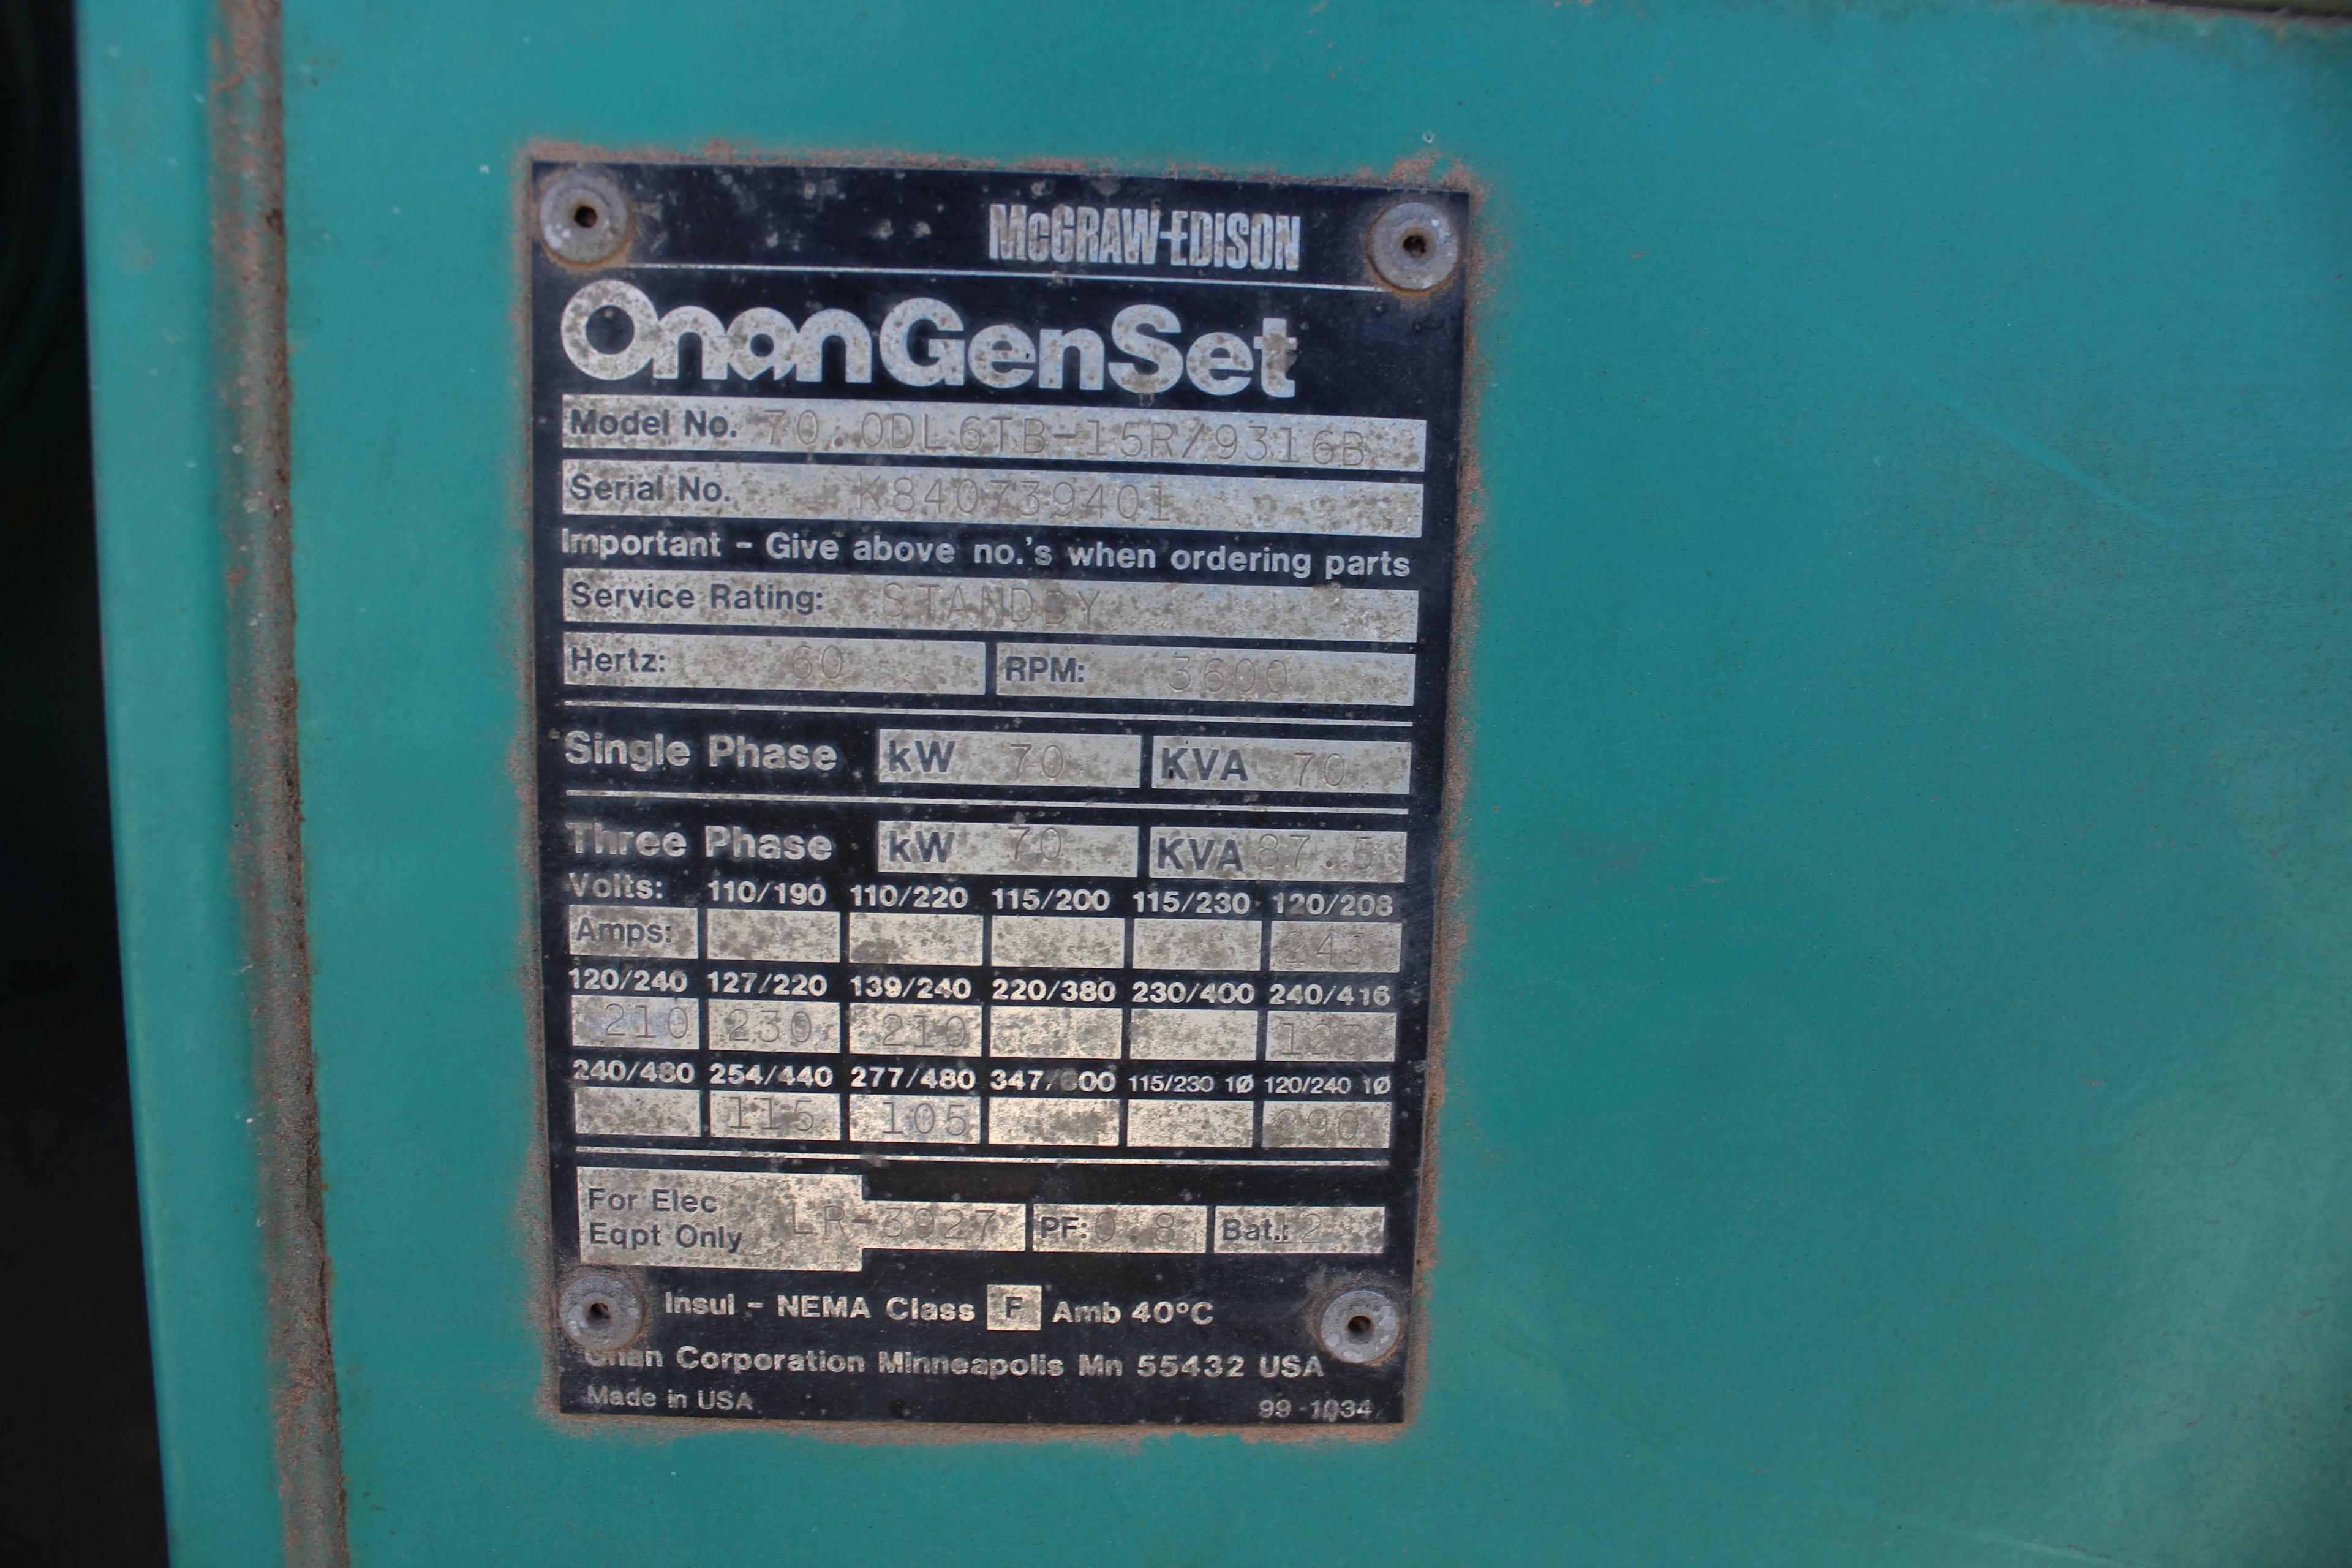 Onan GensSet 70.0DL6TB-15R/9316B